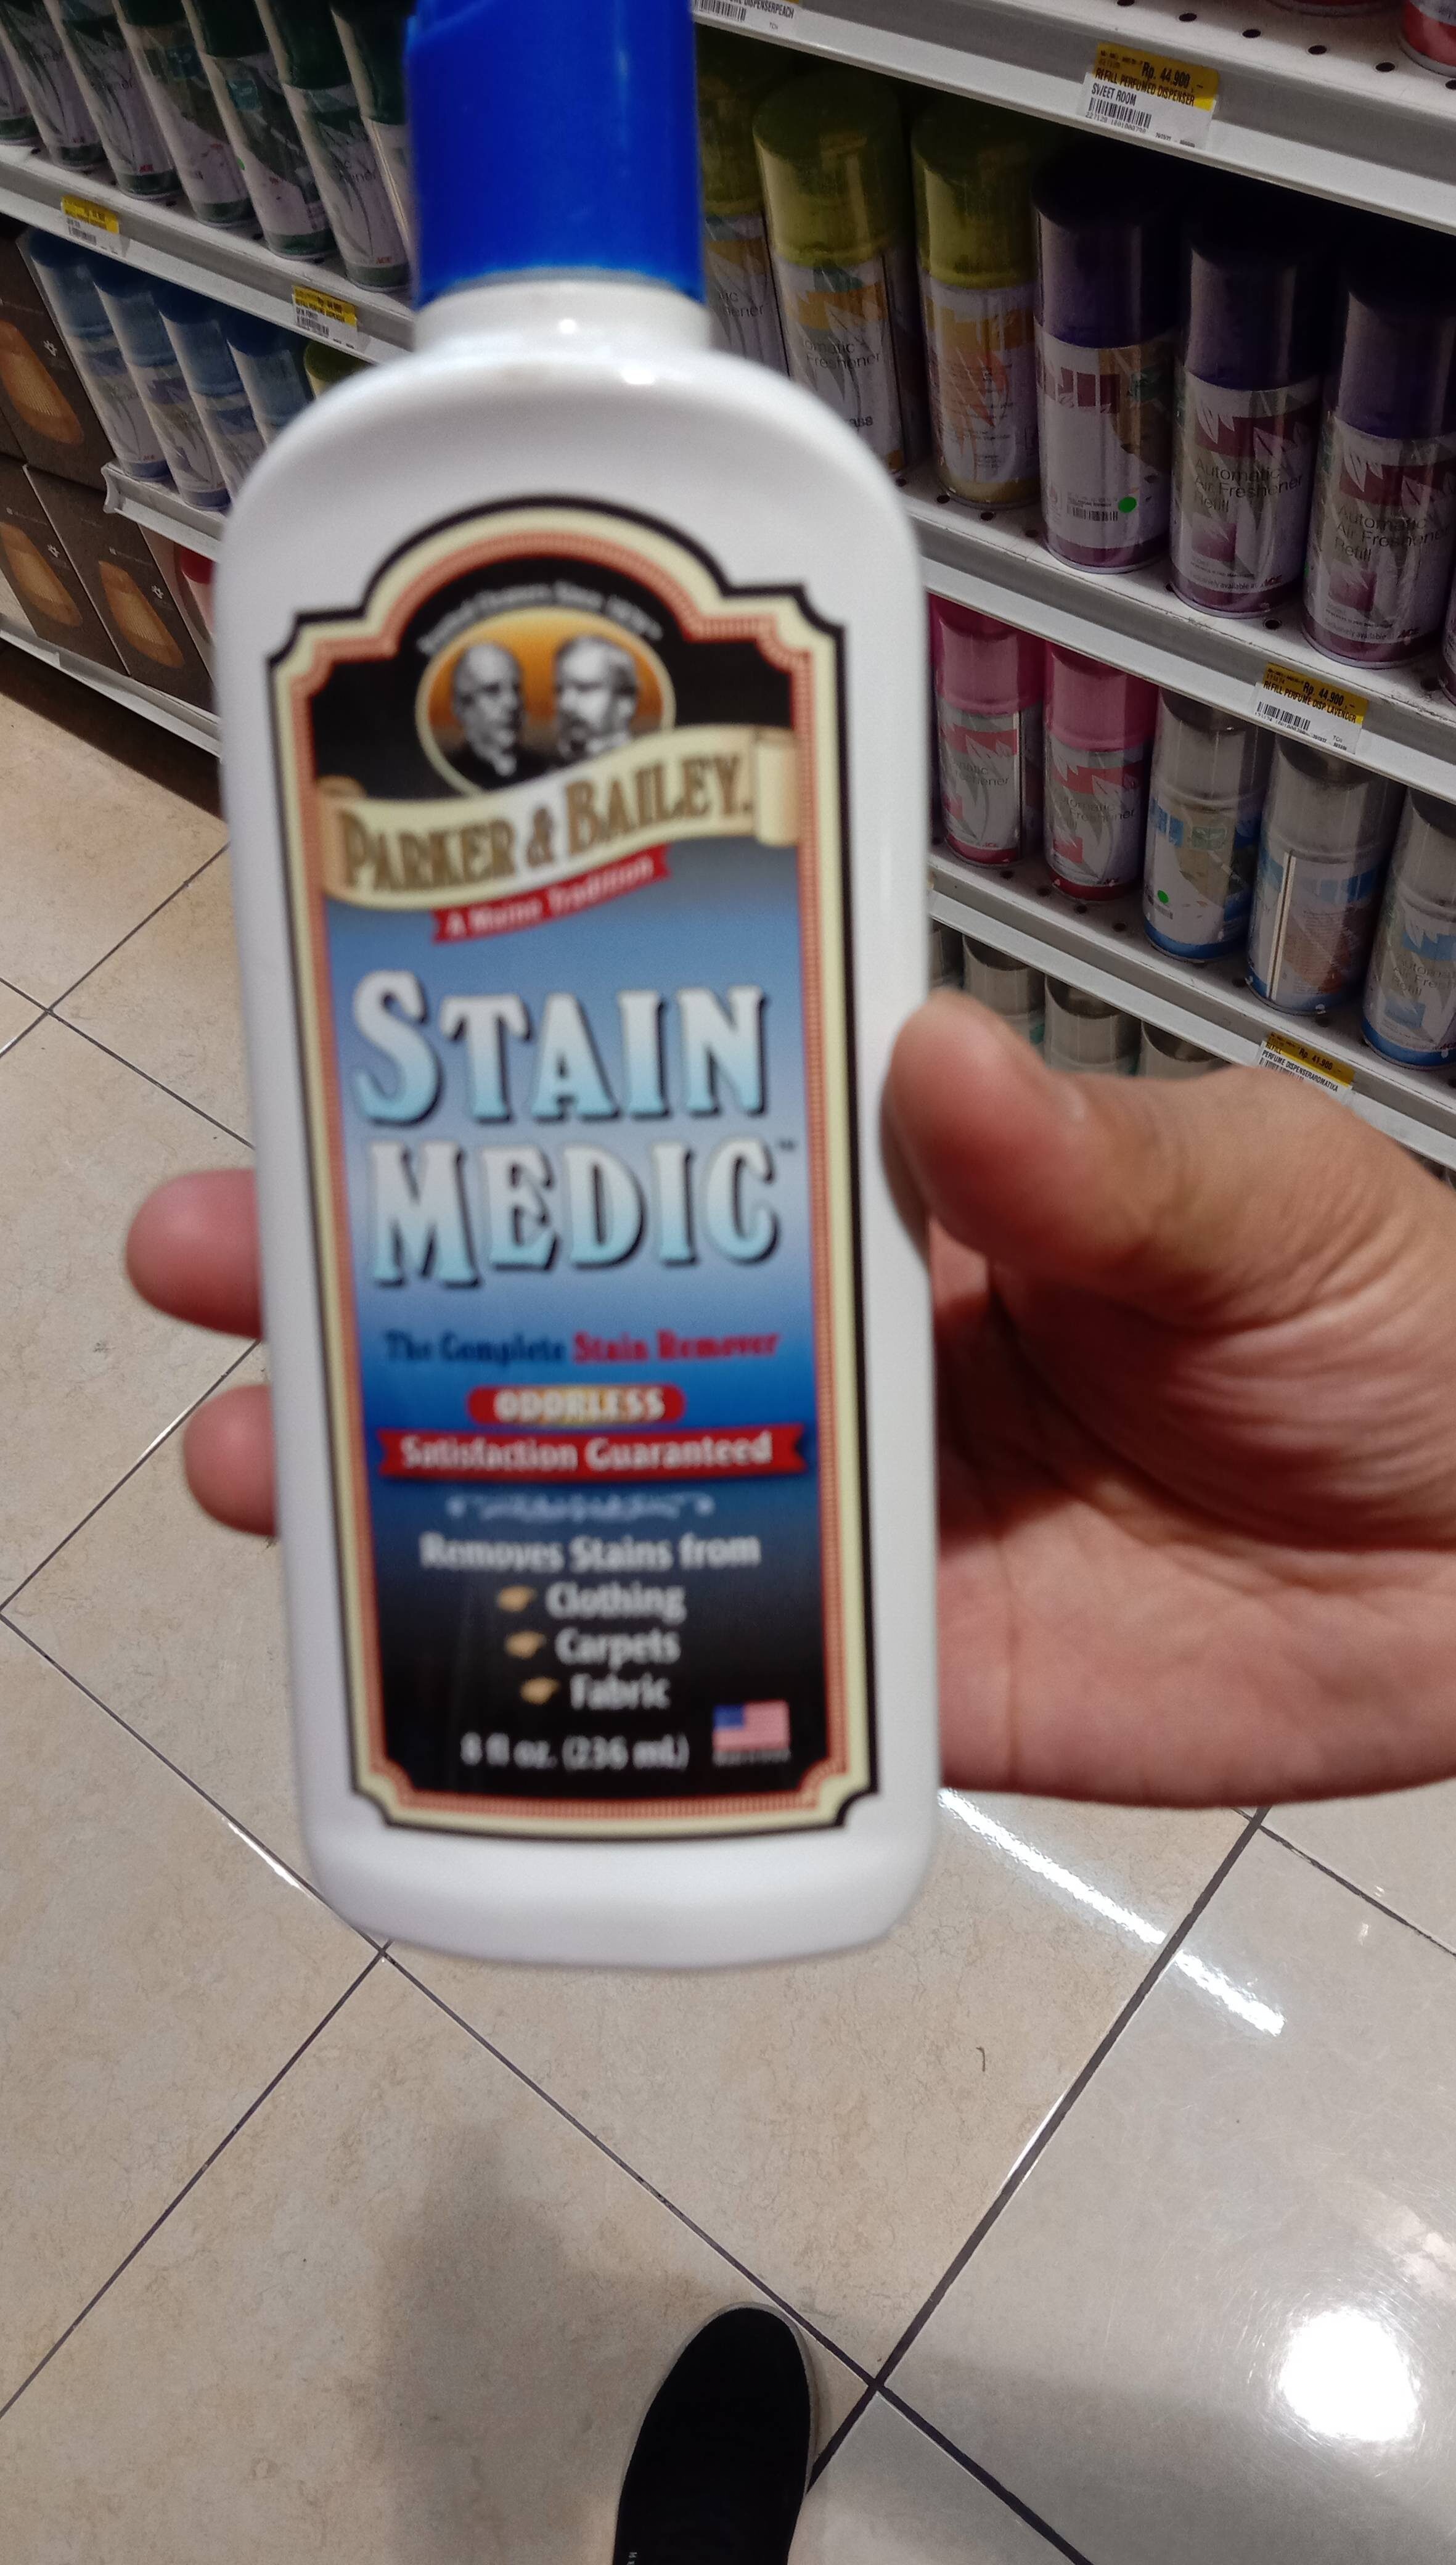 Stain medic - Product - en